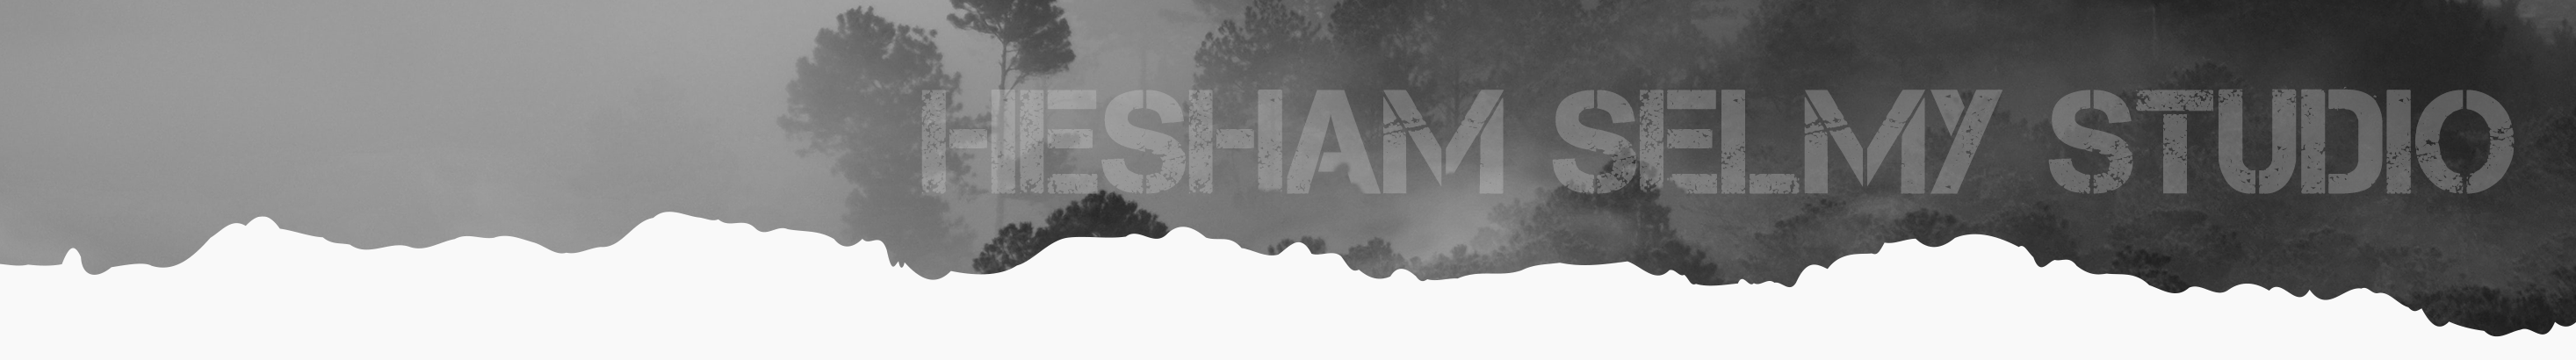 Hesham Selmy ✪'s profile banner